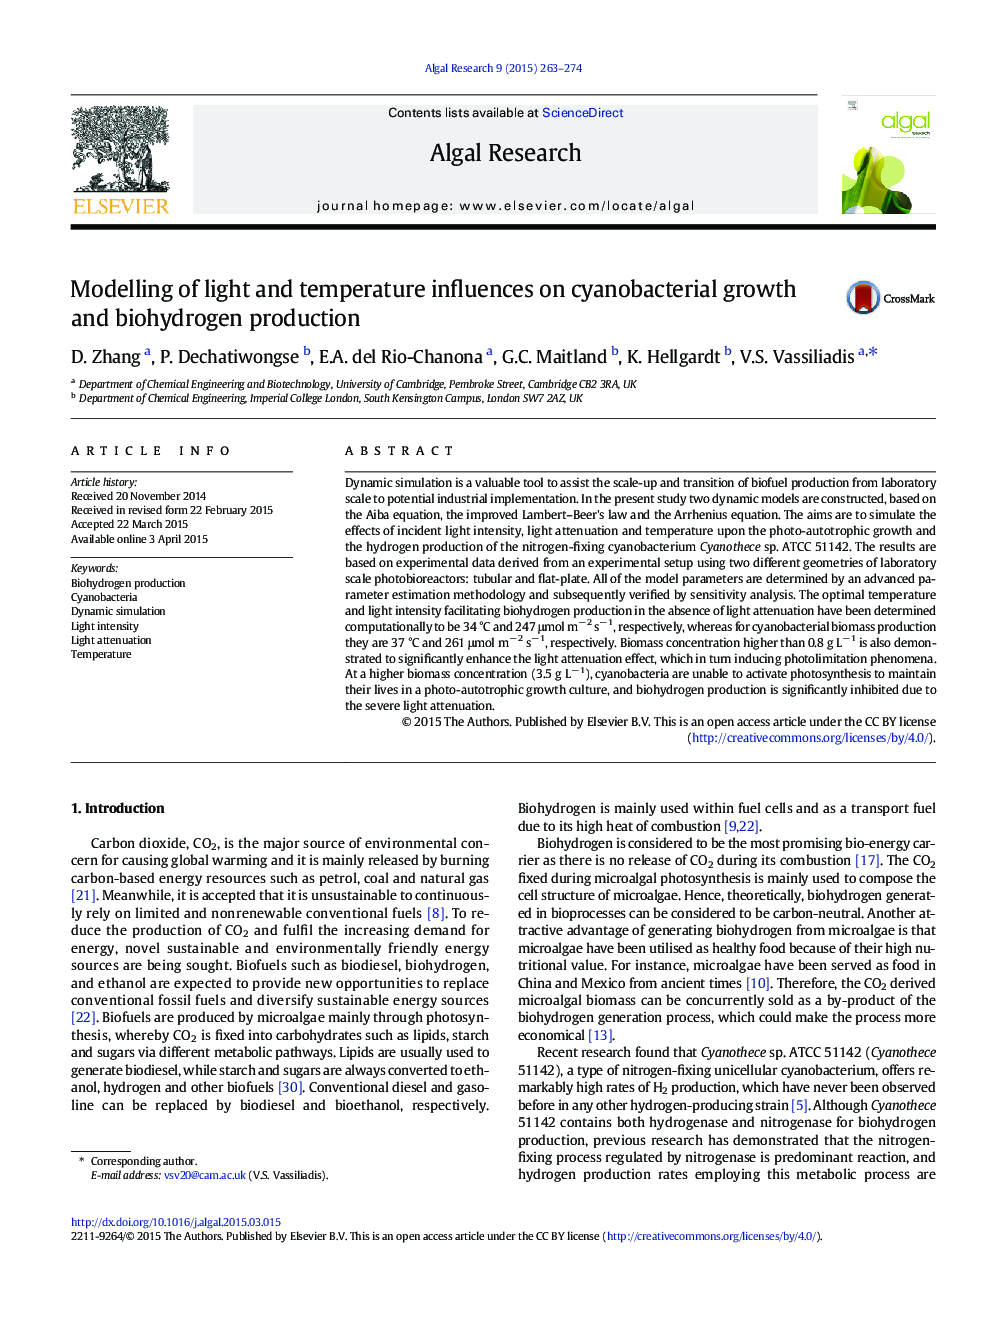 مدل سازی تاثیر نور و دما بر رشد سیانوباکتریایی و تولید بیوشیمیایی 